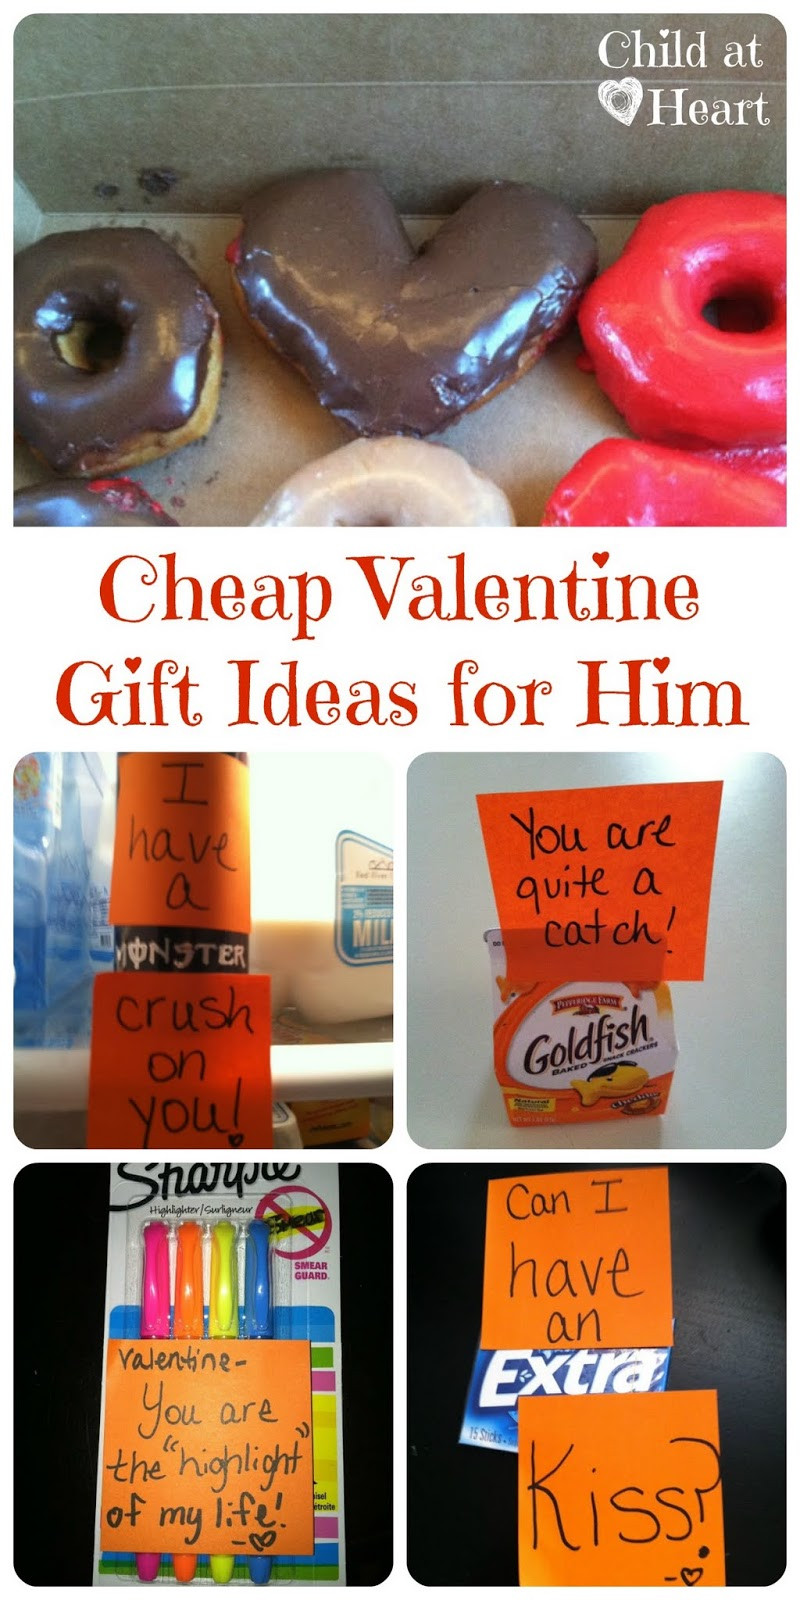 Valentine Gift Ideas For Boyfriends
 Cheap Valentine Gift Ideas for Him Child at Heart Blog